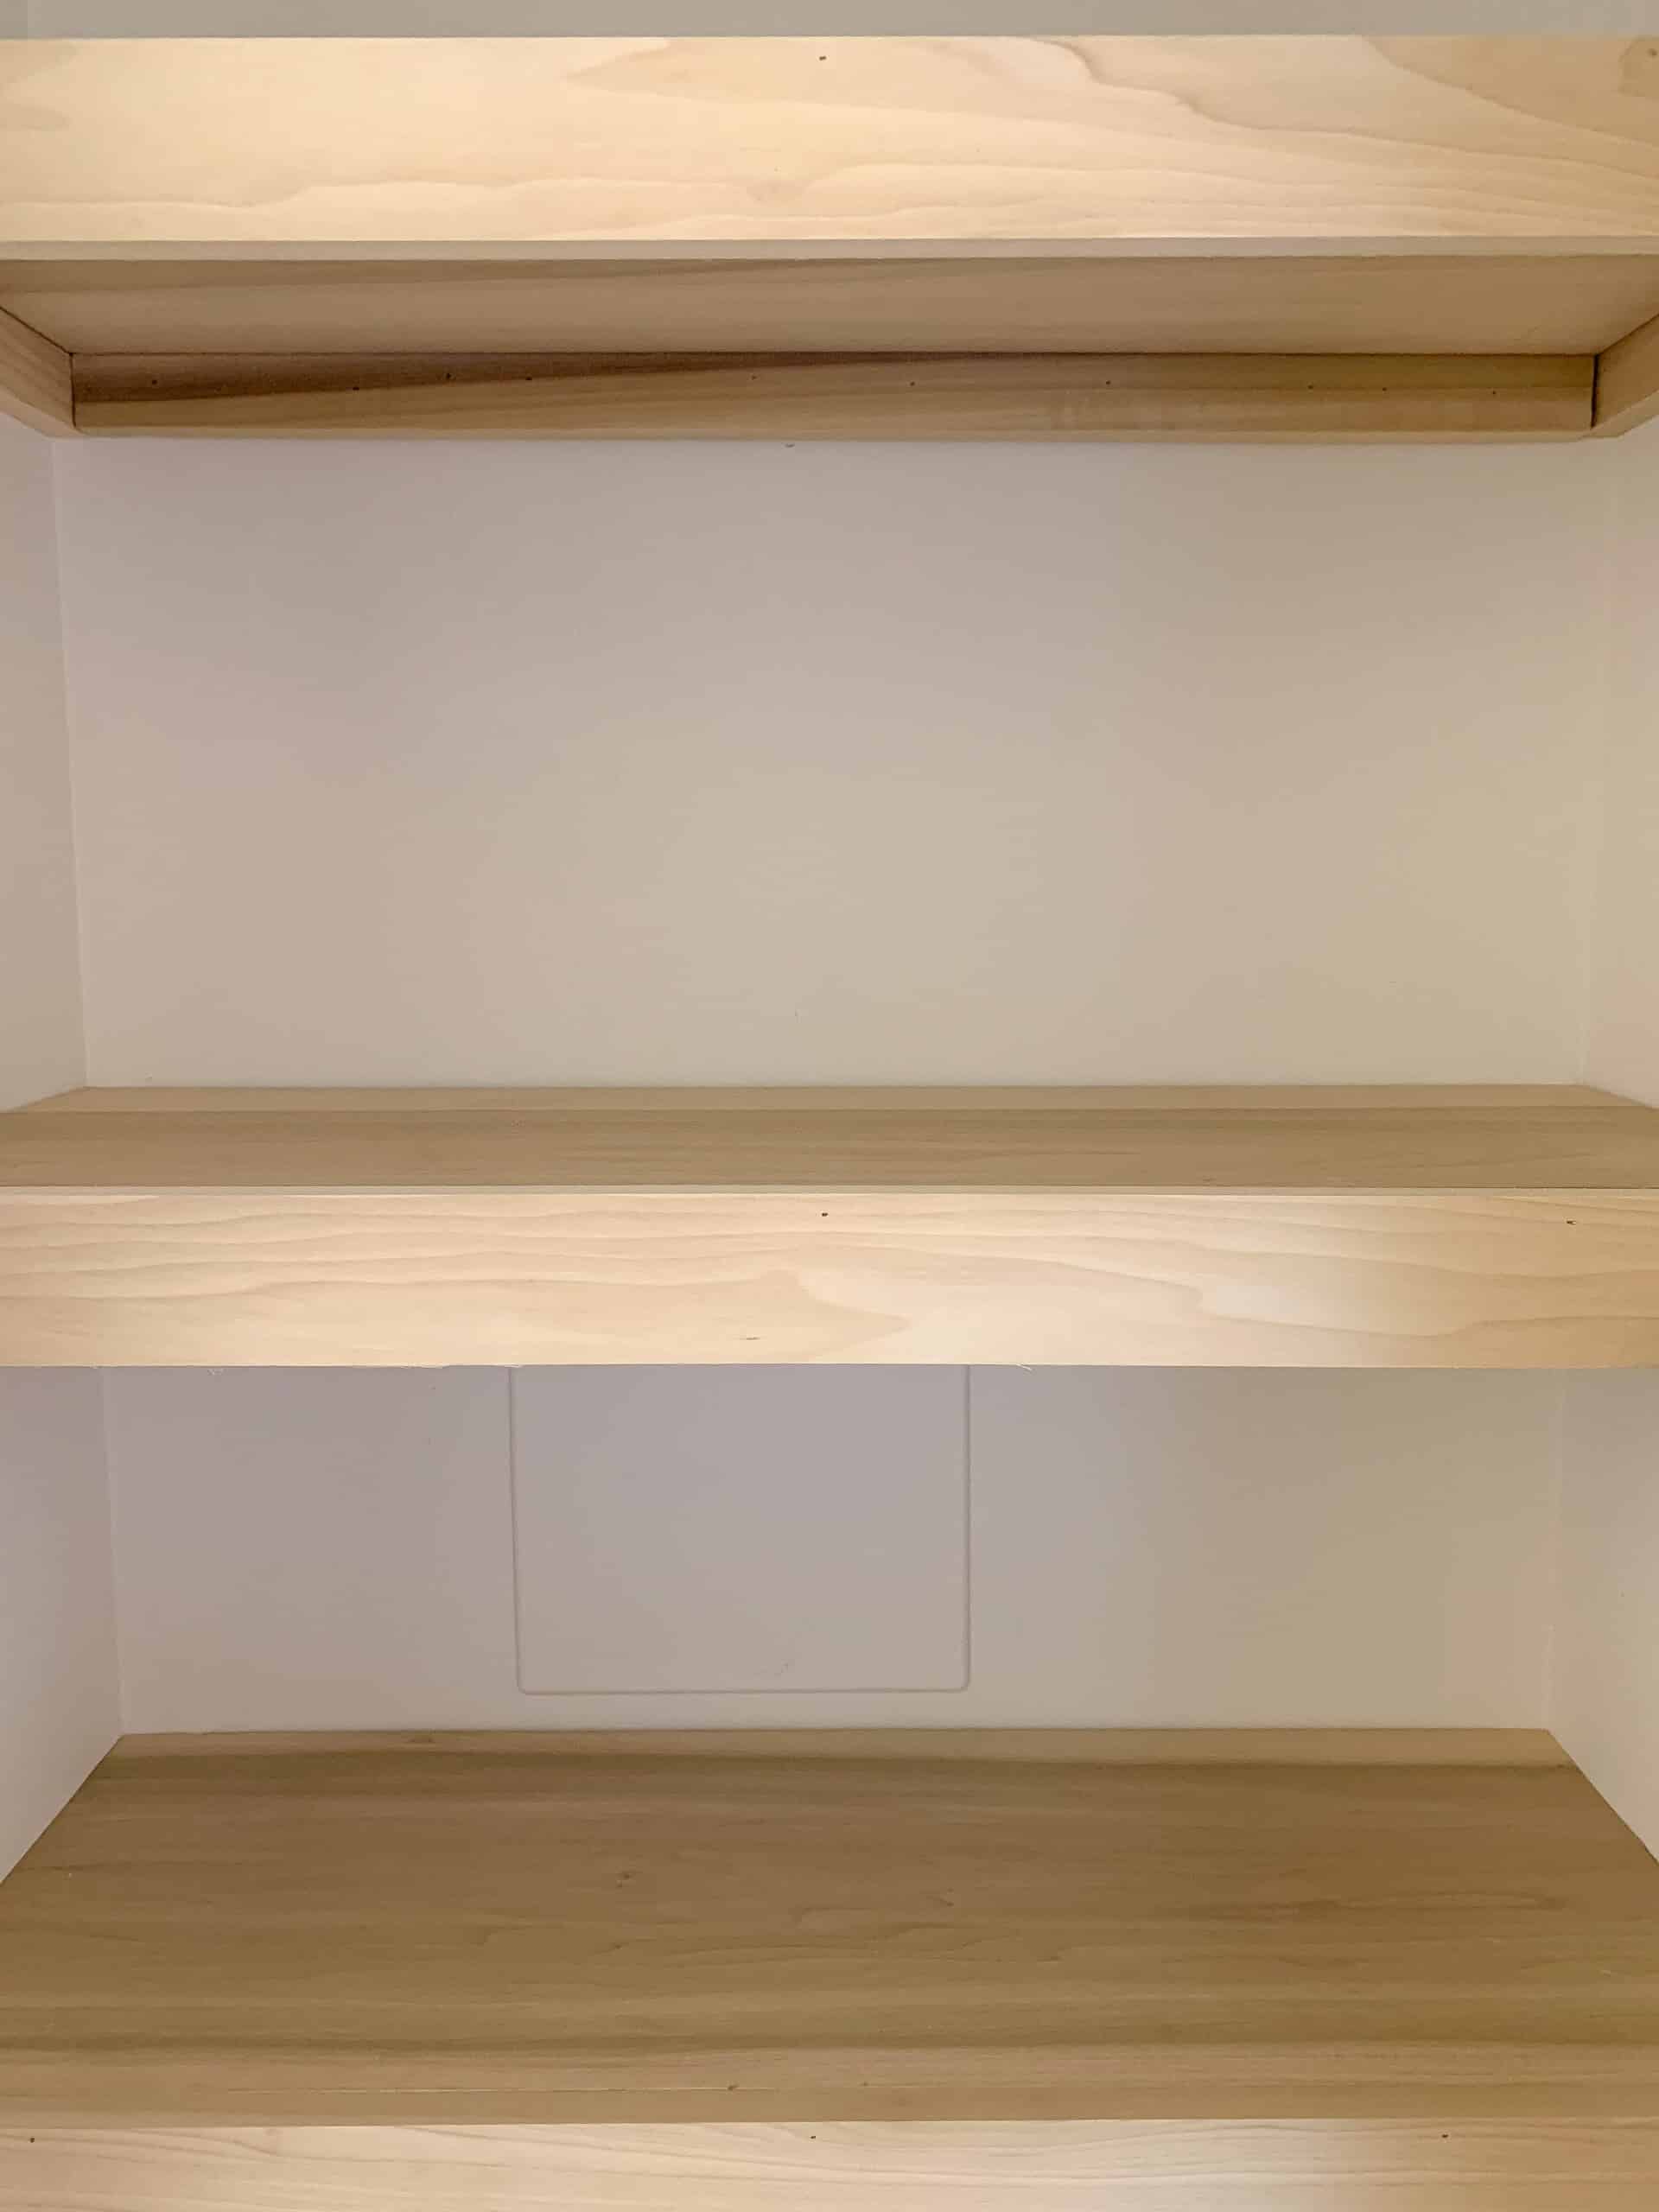 Easy Diy Closet Shelves Tutorial, Diy Adjustable Closet Shelves